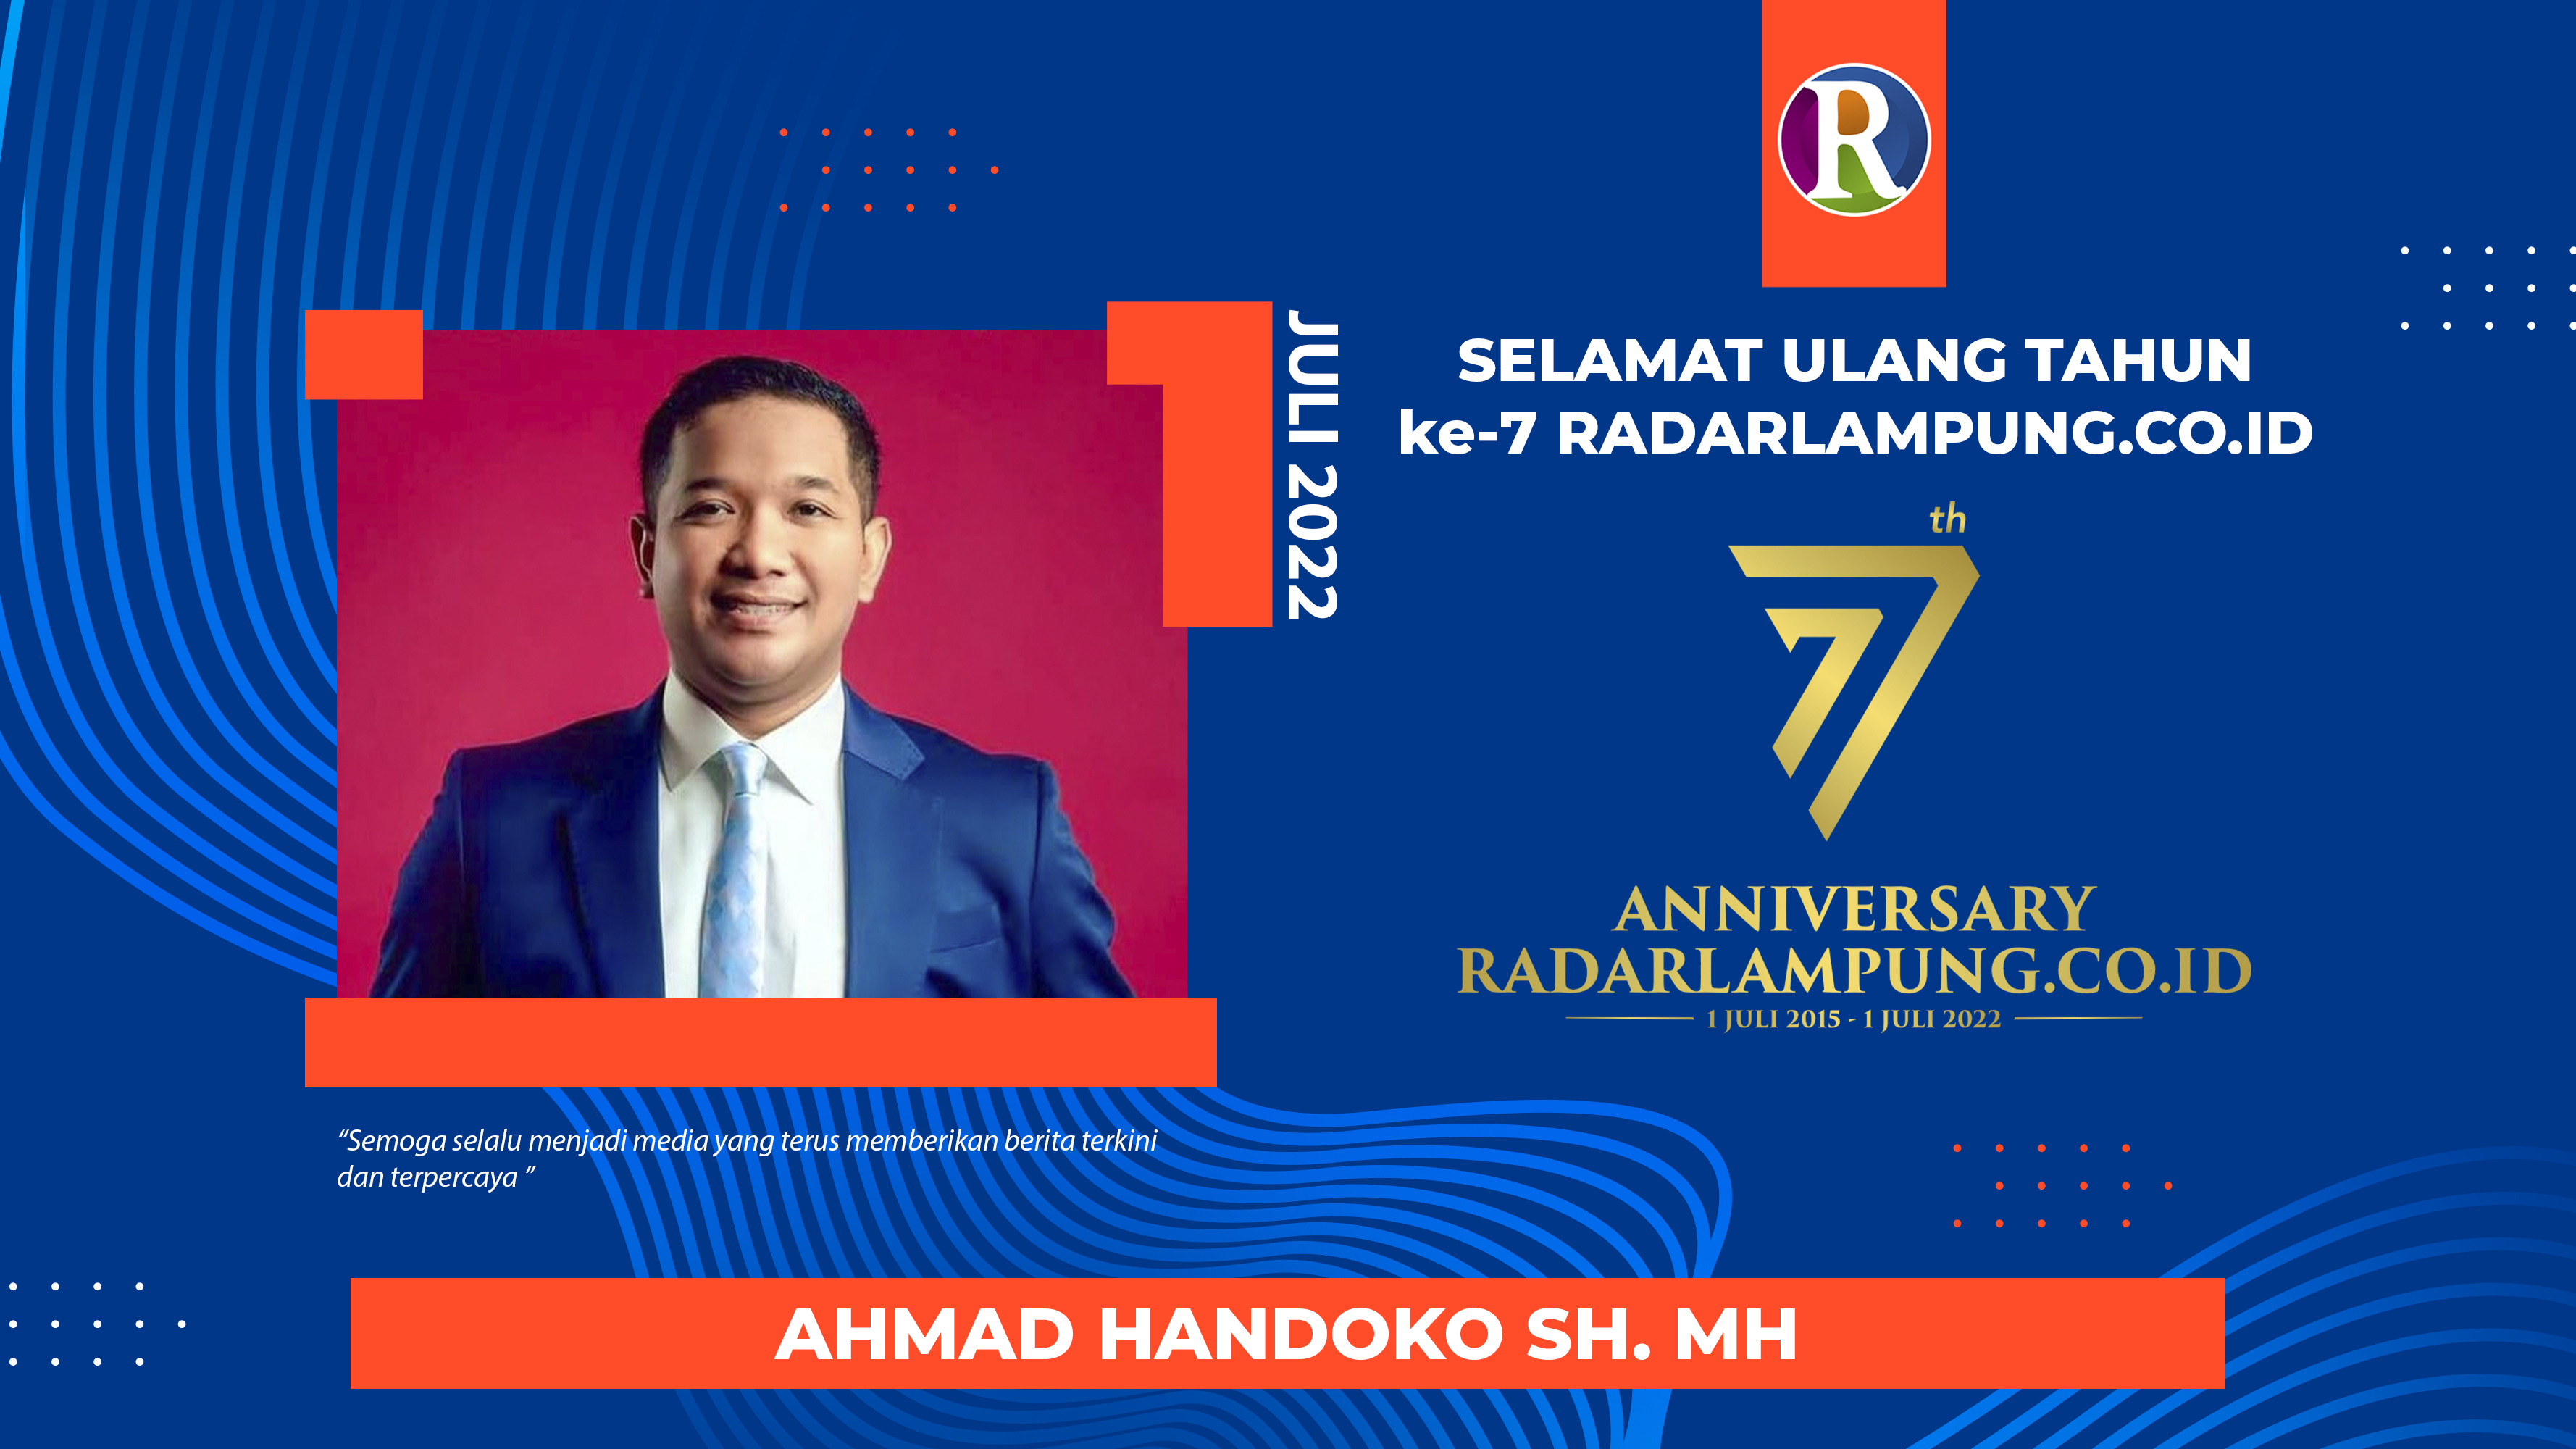 Ahmad Handoko Mengucapkan Selamat Ulang Tahun ke-7 Radarlampung.co.id